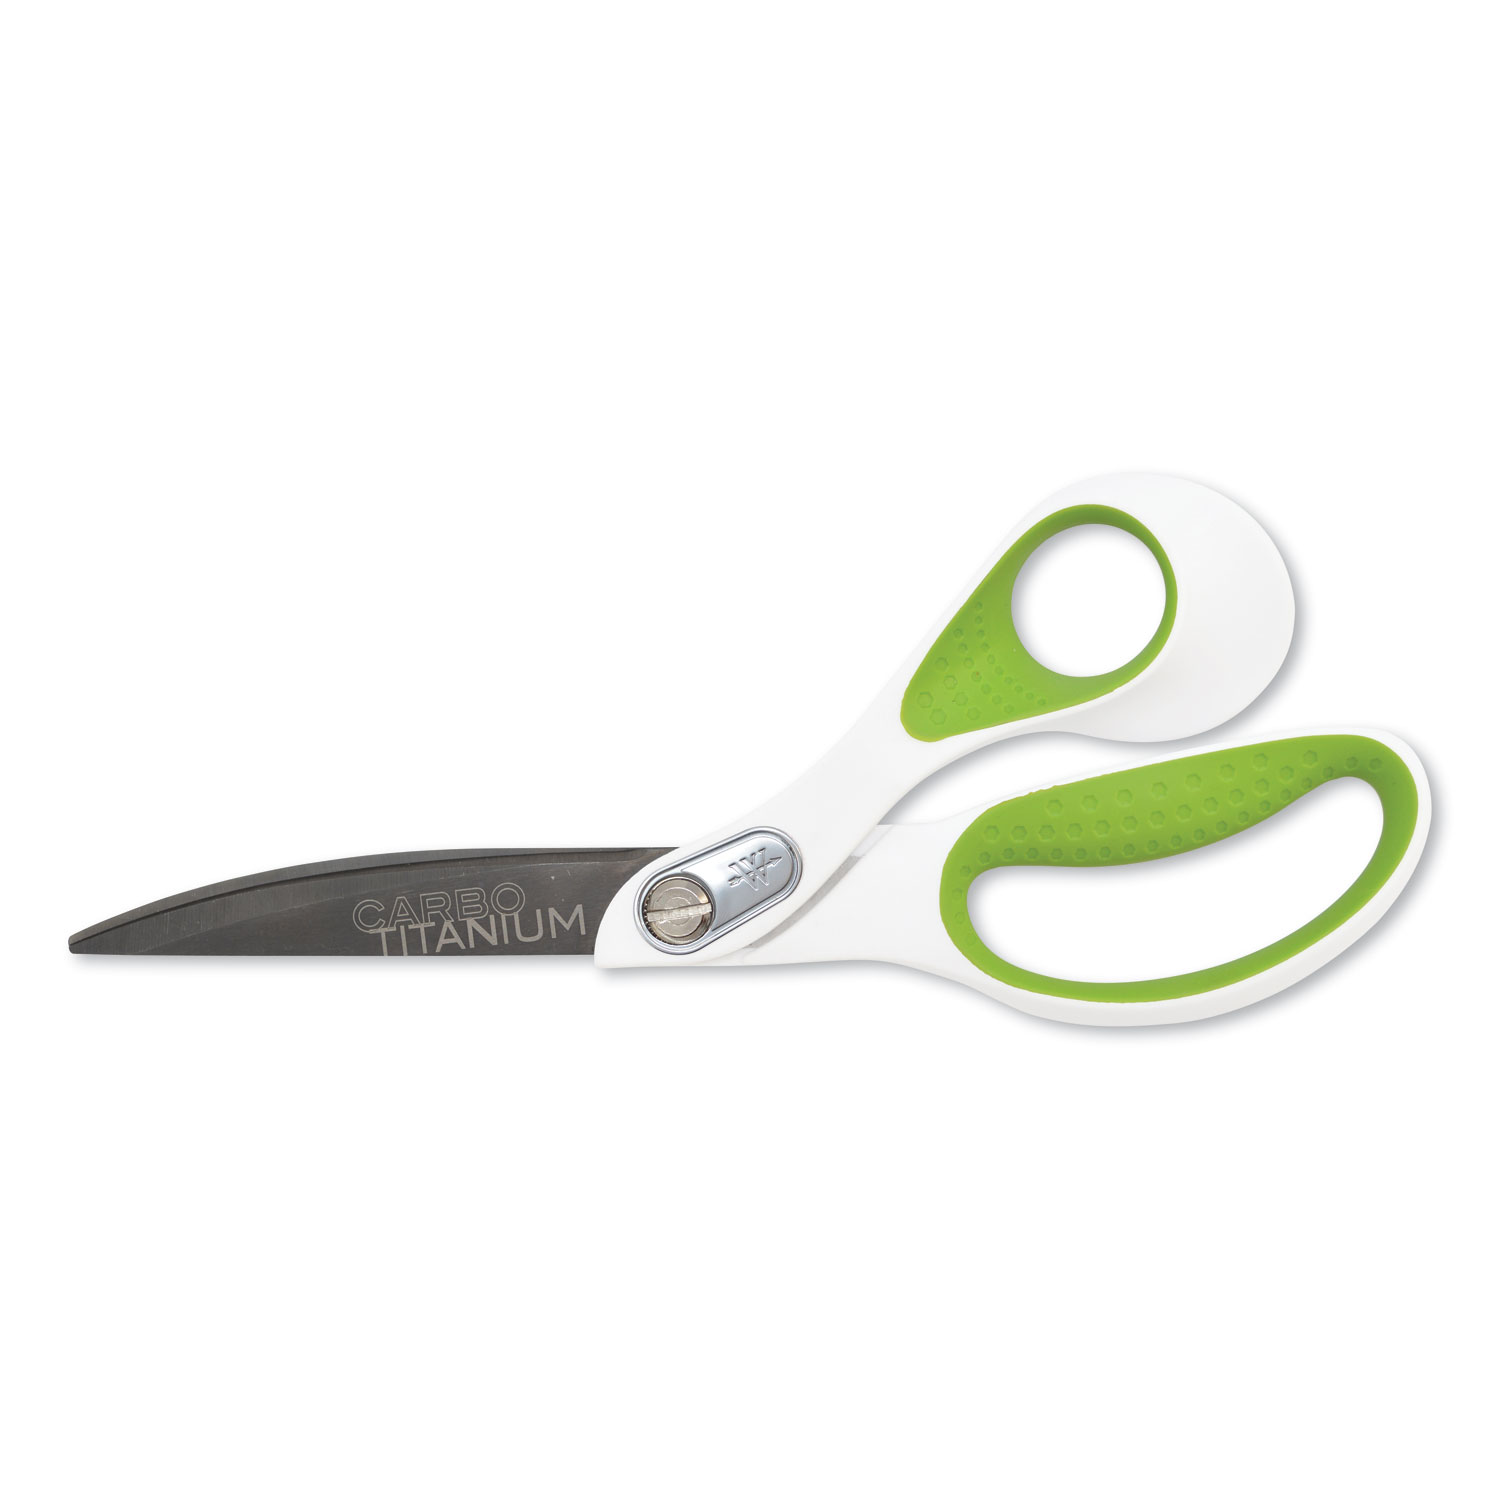  Westcott 16445 CarboTitanium Bonded Scissors, 9 Long, 4.5 Cut Length, White/Green Offset Handle (ACM16445) 